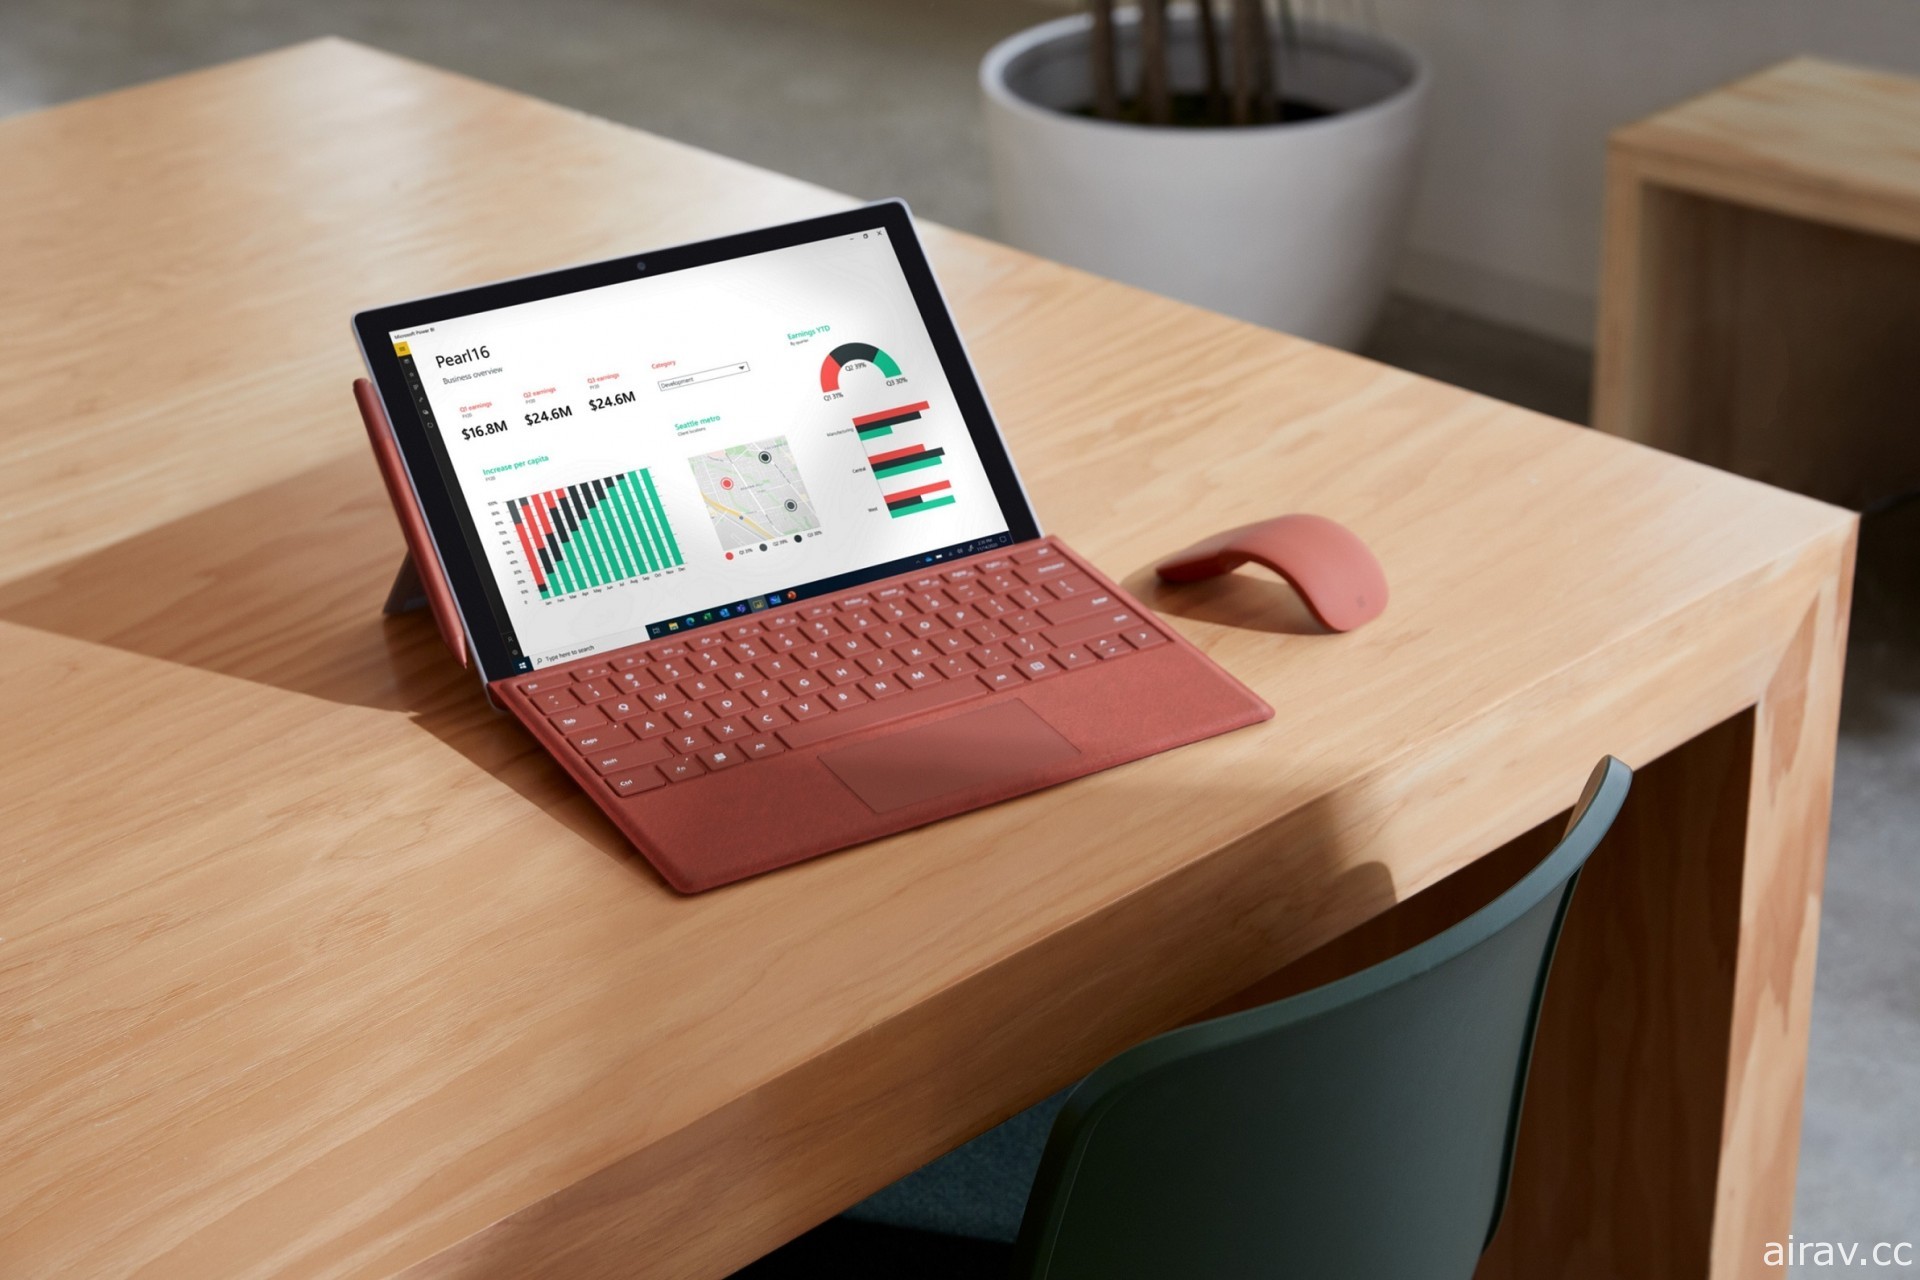 微软发表 Surface Pro 7+ 商务版二合一笔电 LTE 功能将克服环境挑战、保持联系